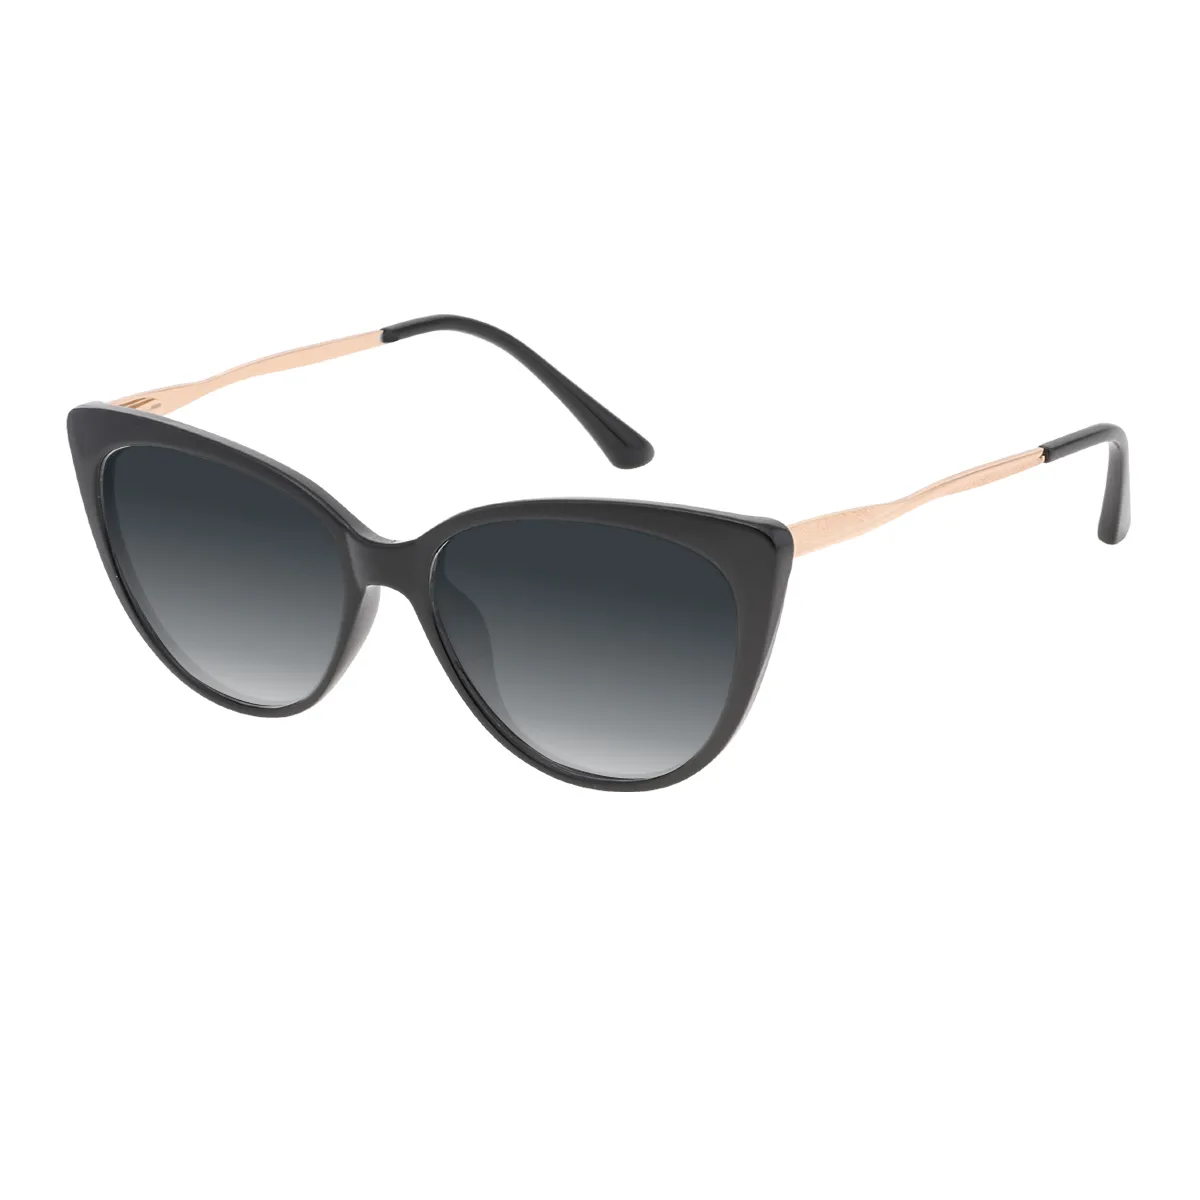 Inez - Cat-eye Black Sunglasses for Women